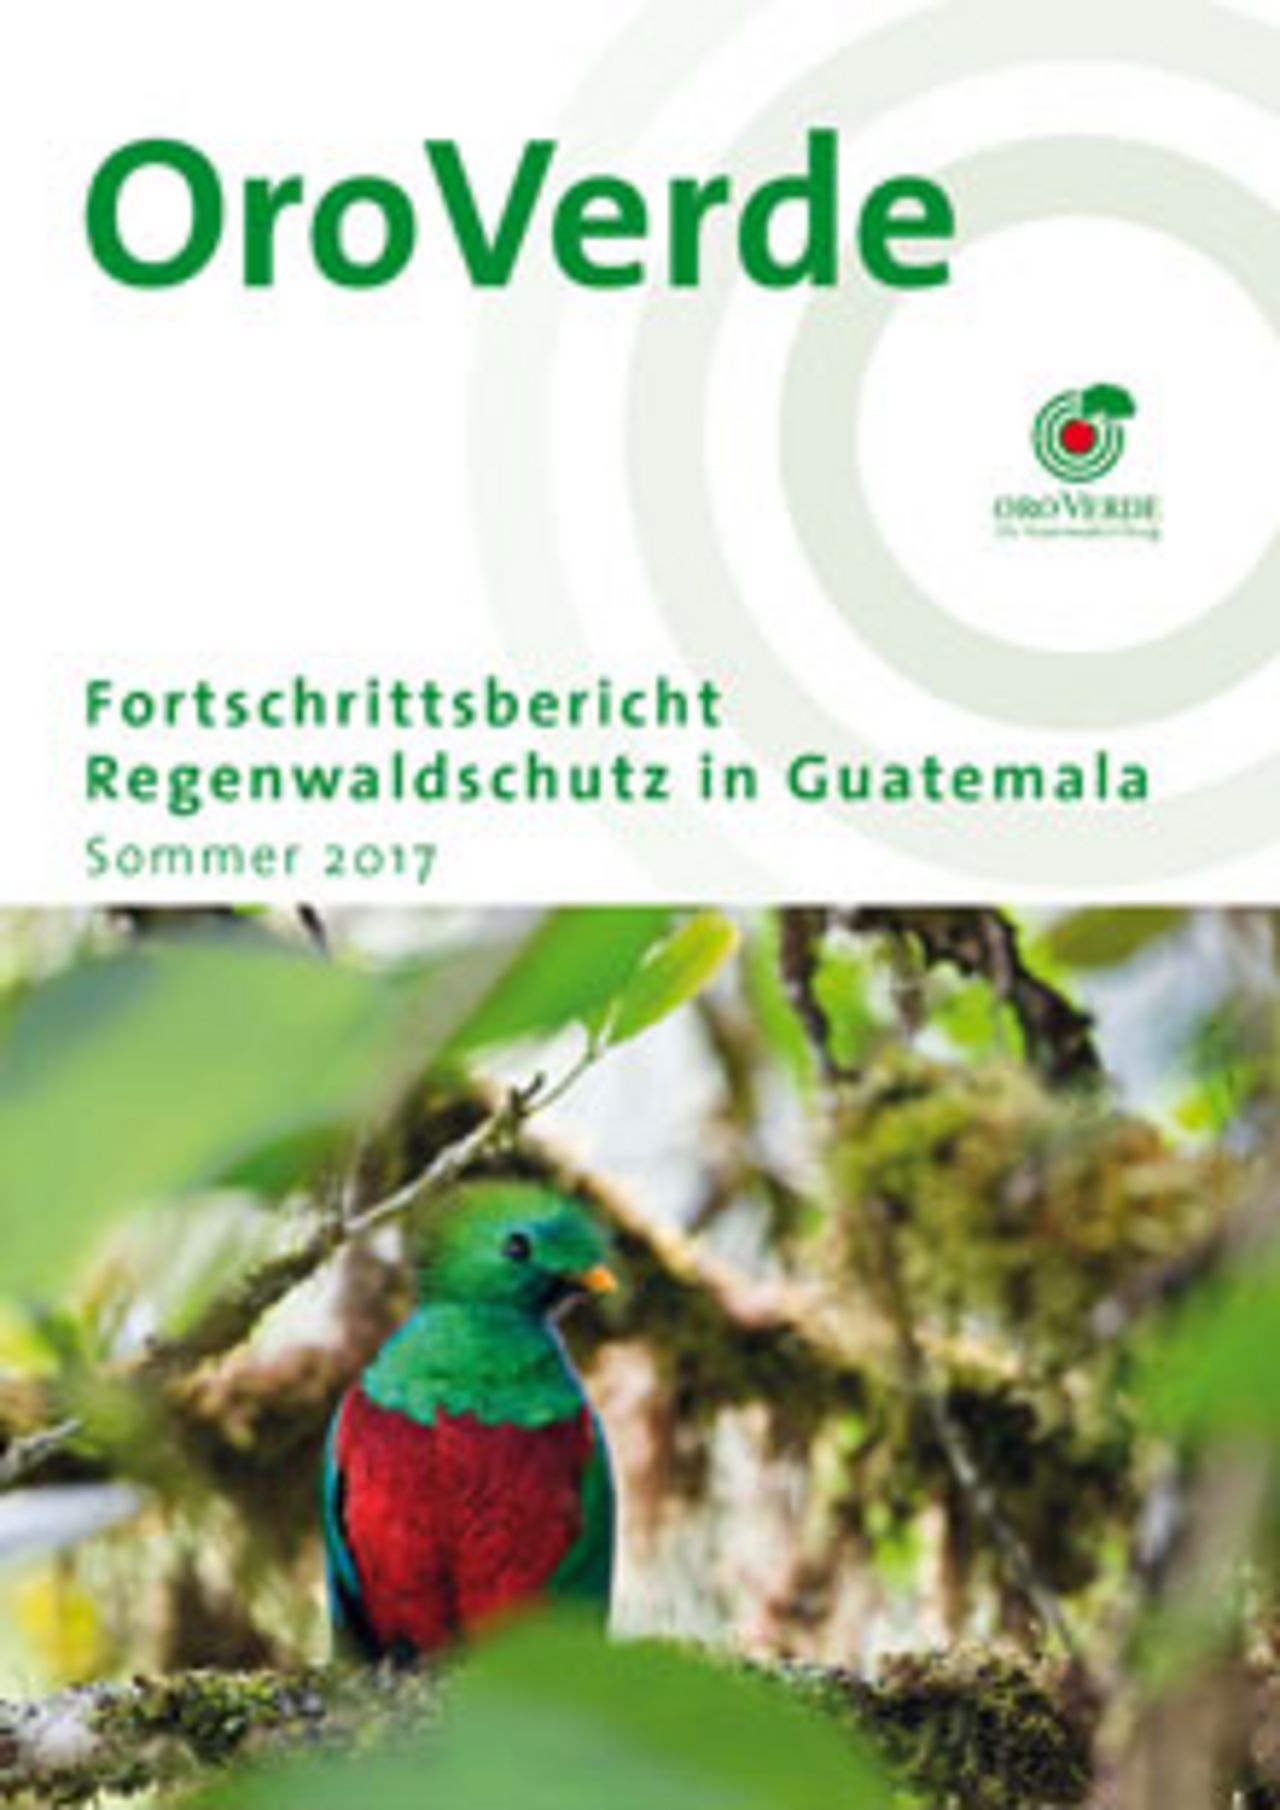 Projektfortschrittsbericht Guatemala 2017 Regenwaldschutz